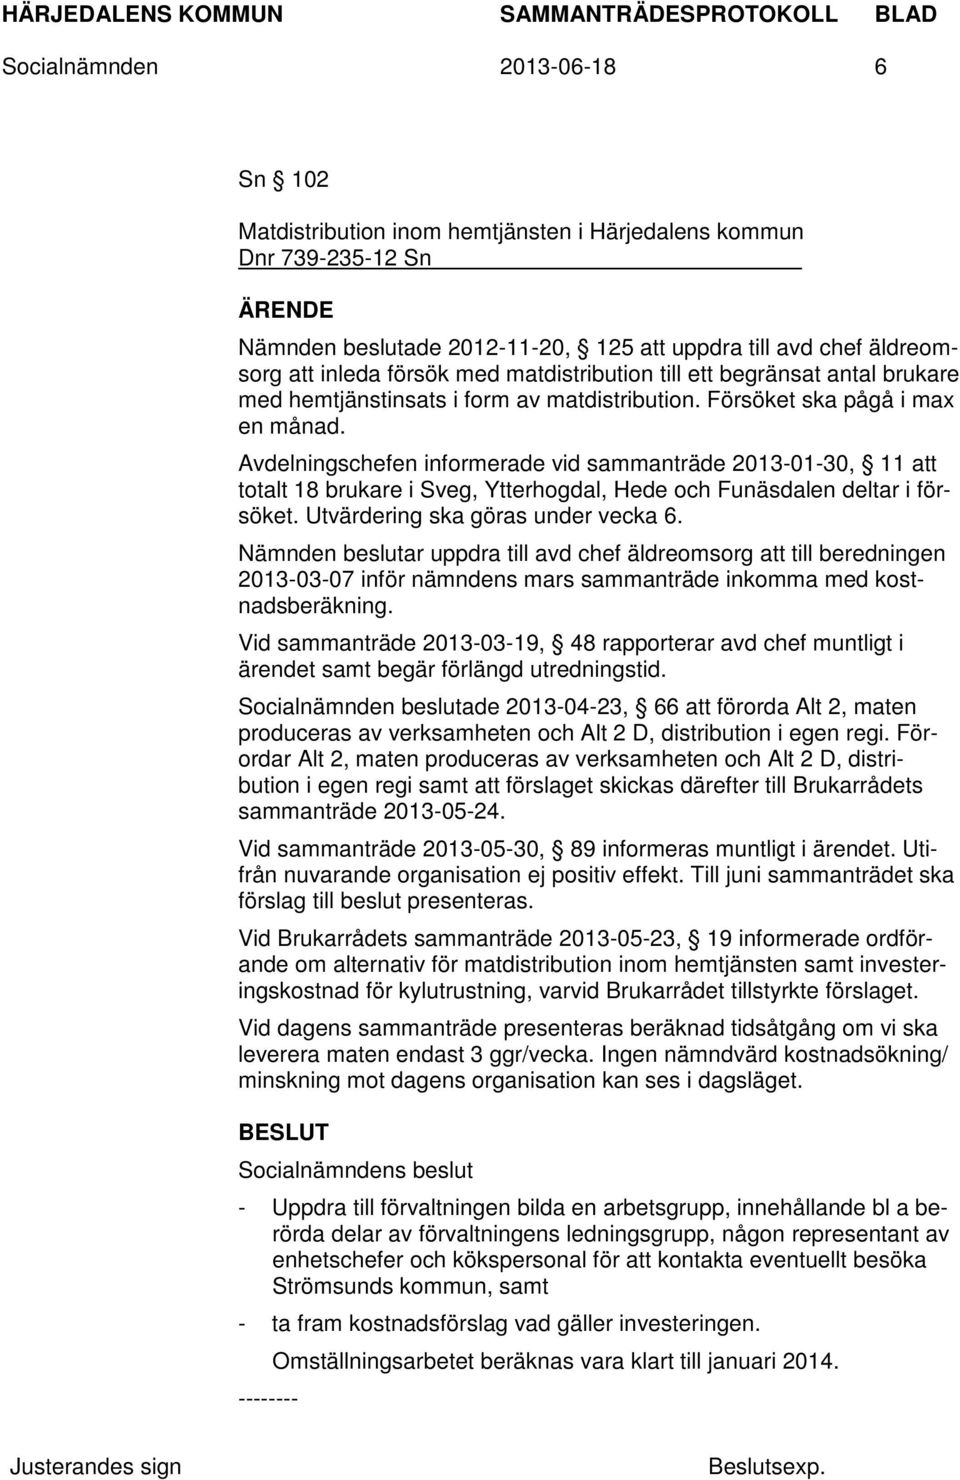 Avdelningschefen informerade vid sammanträde 2013-01-30, 11 att totalt 18 brukare i Sveg, Ytterhogdal, Hede och Funäsdalen deltar i försöket. Utvärdering ska göras under vecka 6.